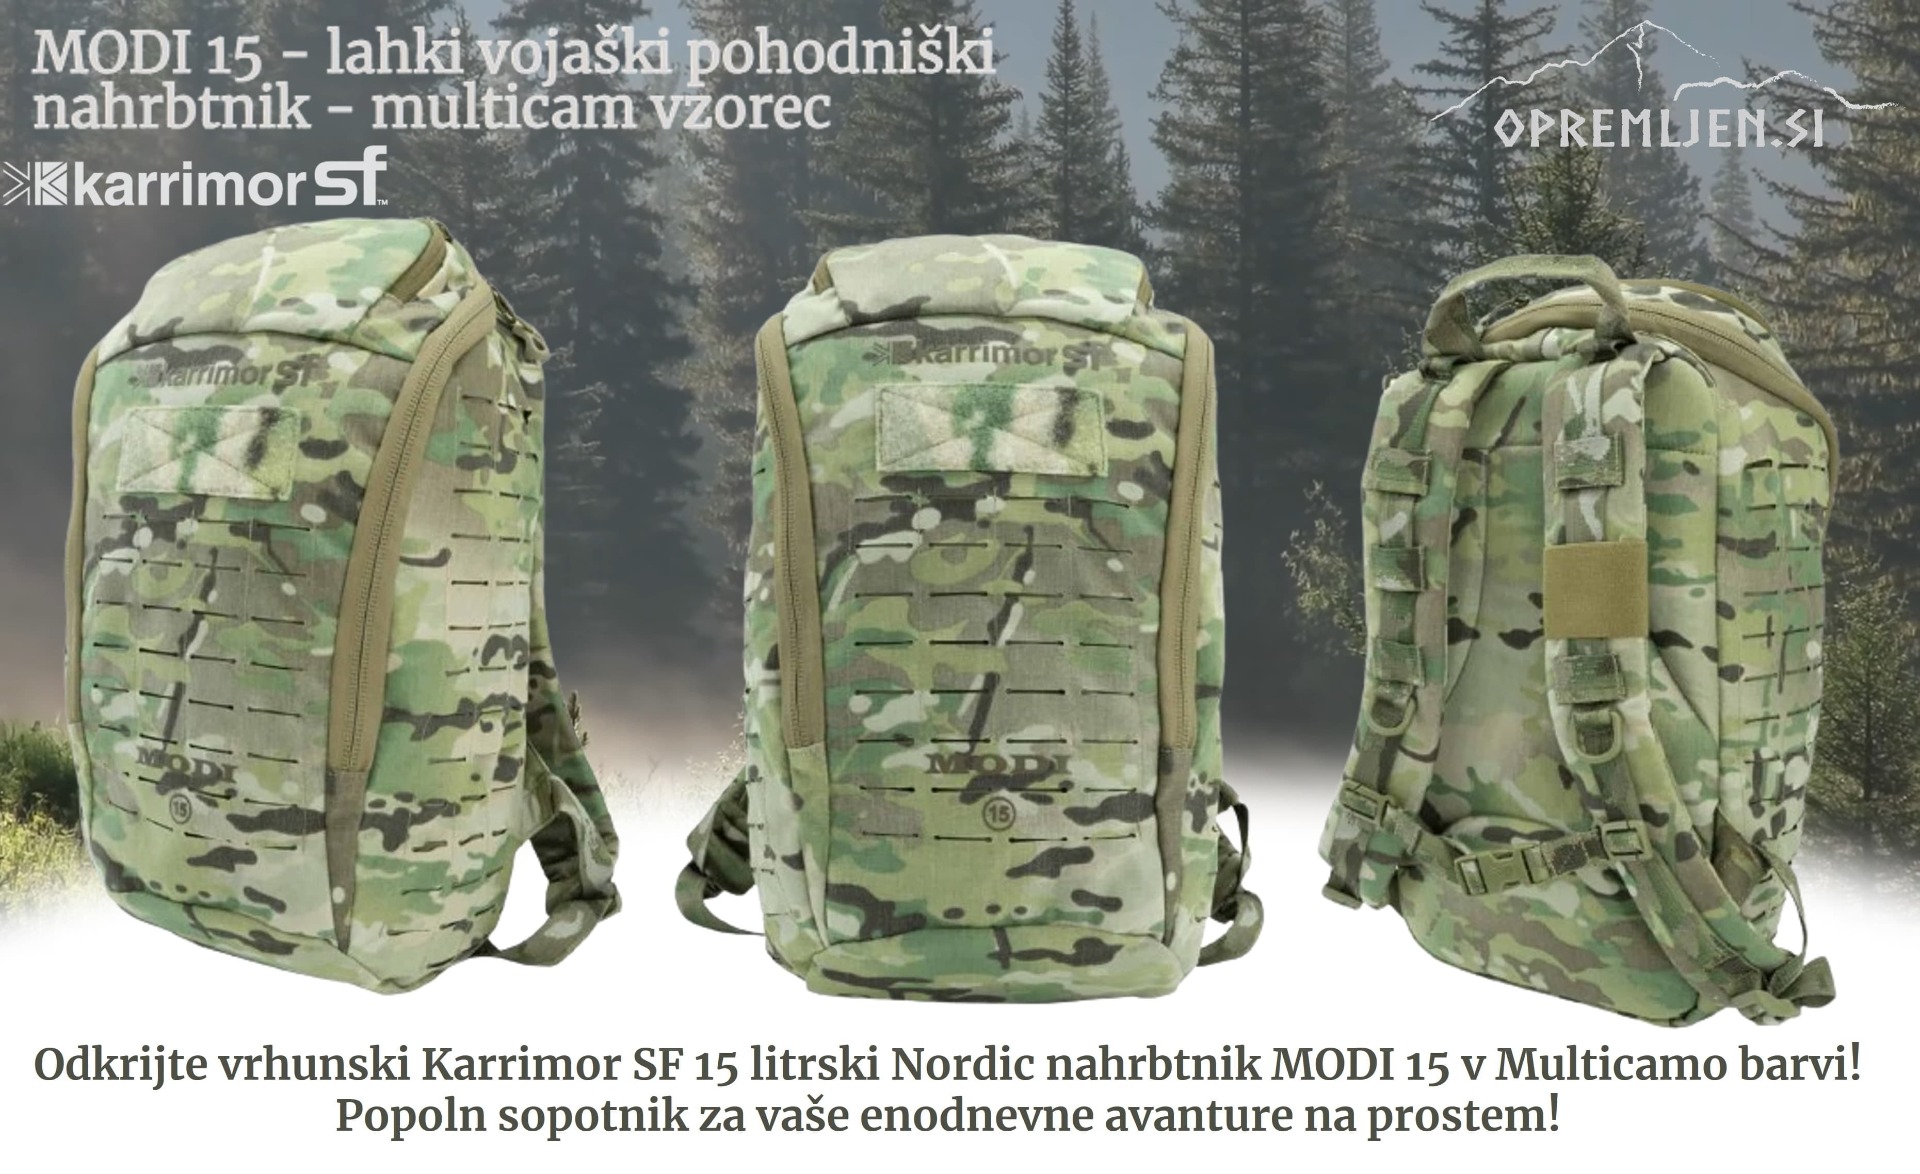 Izberite Karrimor SF Nordic linijo vojaškega nahrbtnika MODI 15 za vaš naslednji pustolovski podvig. Ta visokokakovostni taktični nahrbtnik je izdelan za zagotavljanje vzdržljivosti in funkcionalnosti v vsakem okolju. Opremljen.si ponuja široko izbiro voj